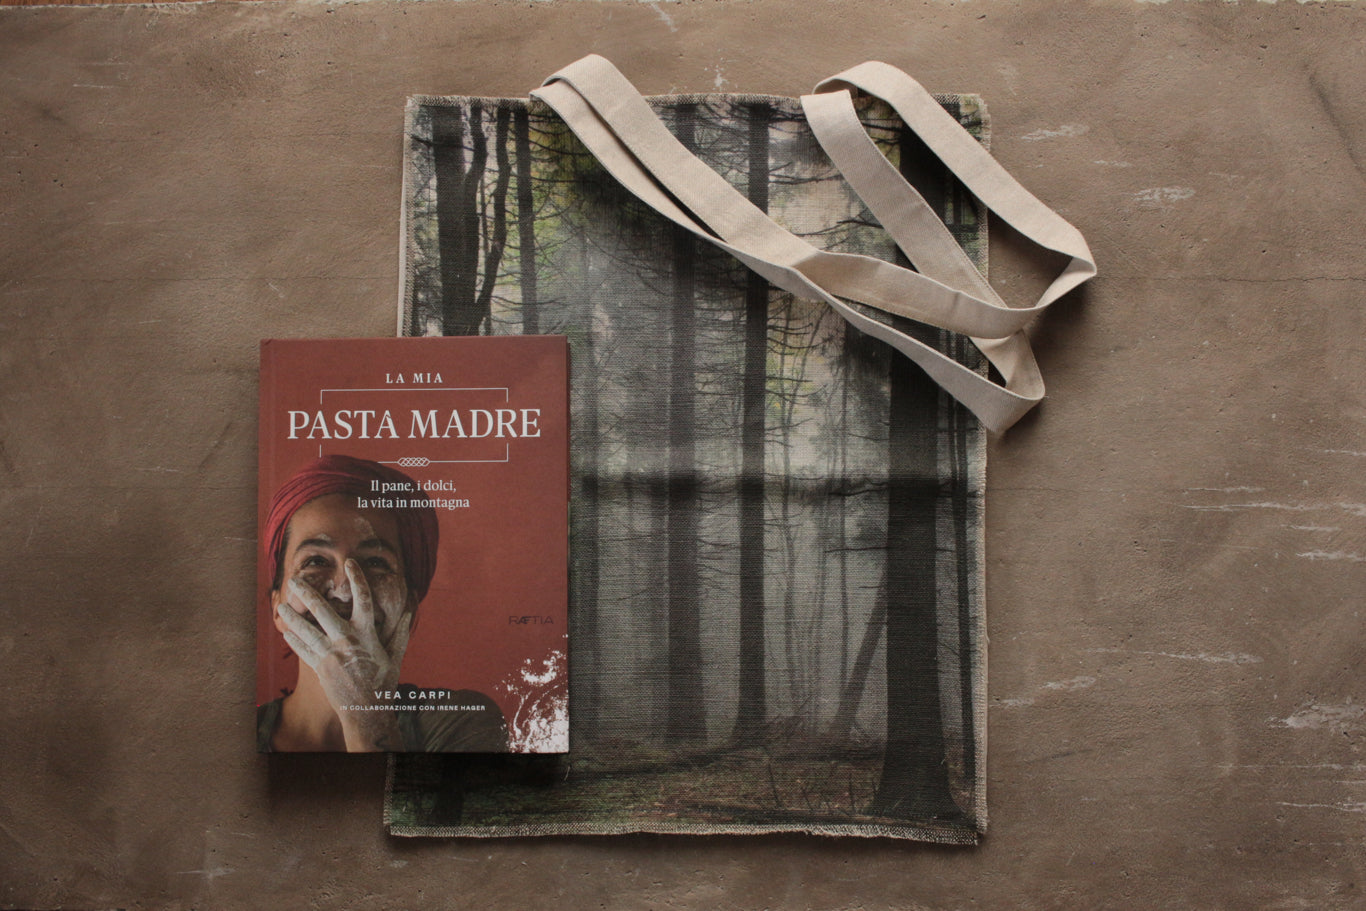 un box speciale contenente il nuovo libro di Vea Carpi "la mia pasta madre" e la nostra borsa foresta totebag in lino e cotone.